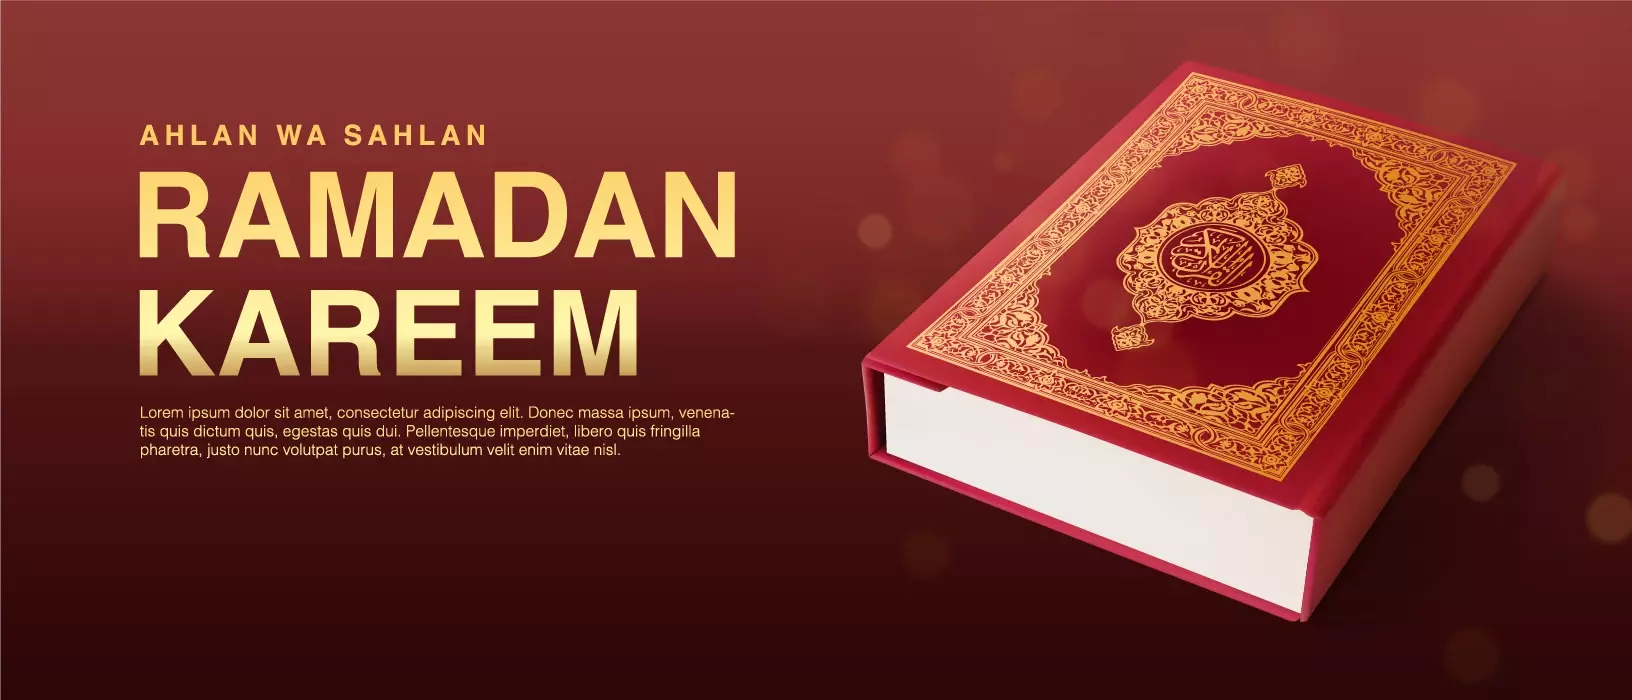 دانلود وکتور قرآن کریم واقع بینانه و رمضان کریم